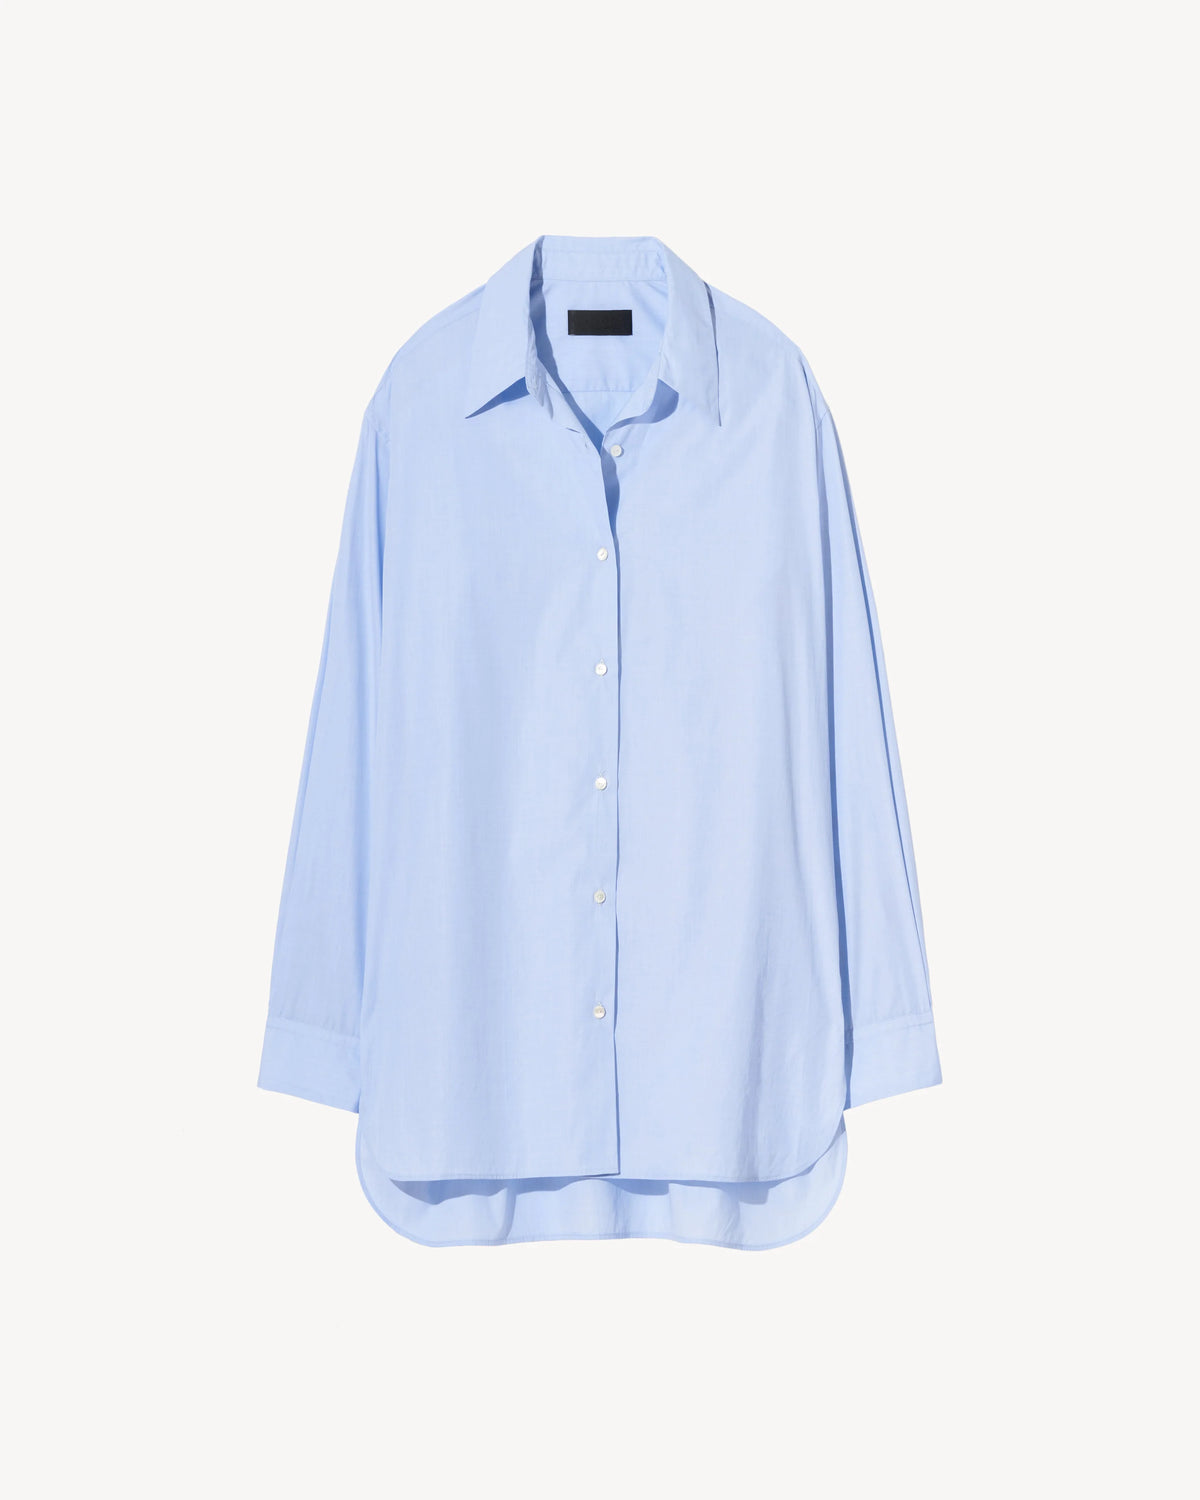 Nili Lotan Yorke Shirt Bluse blau